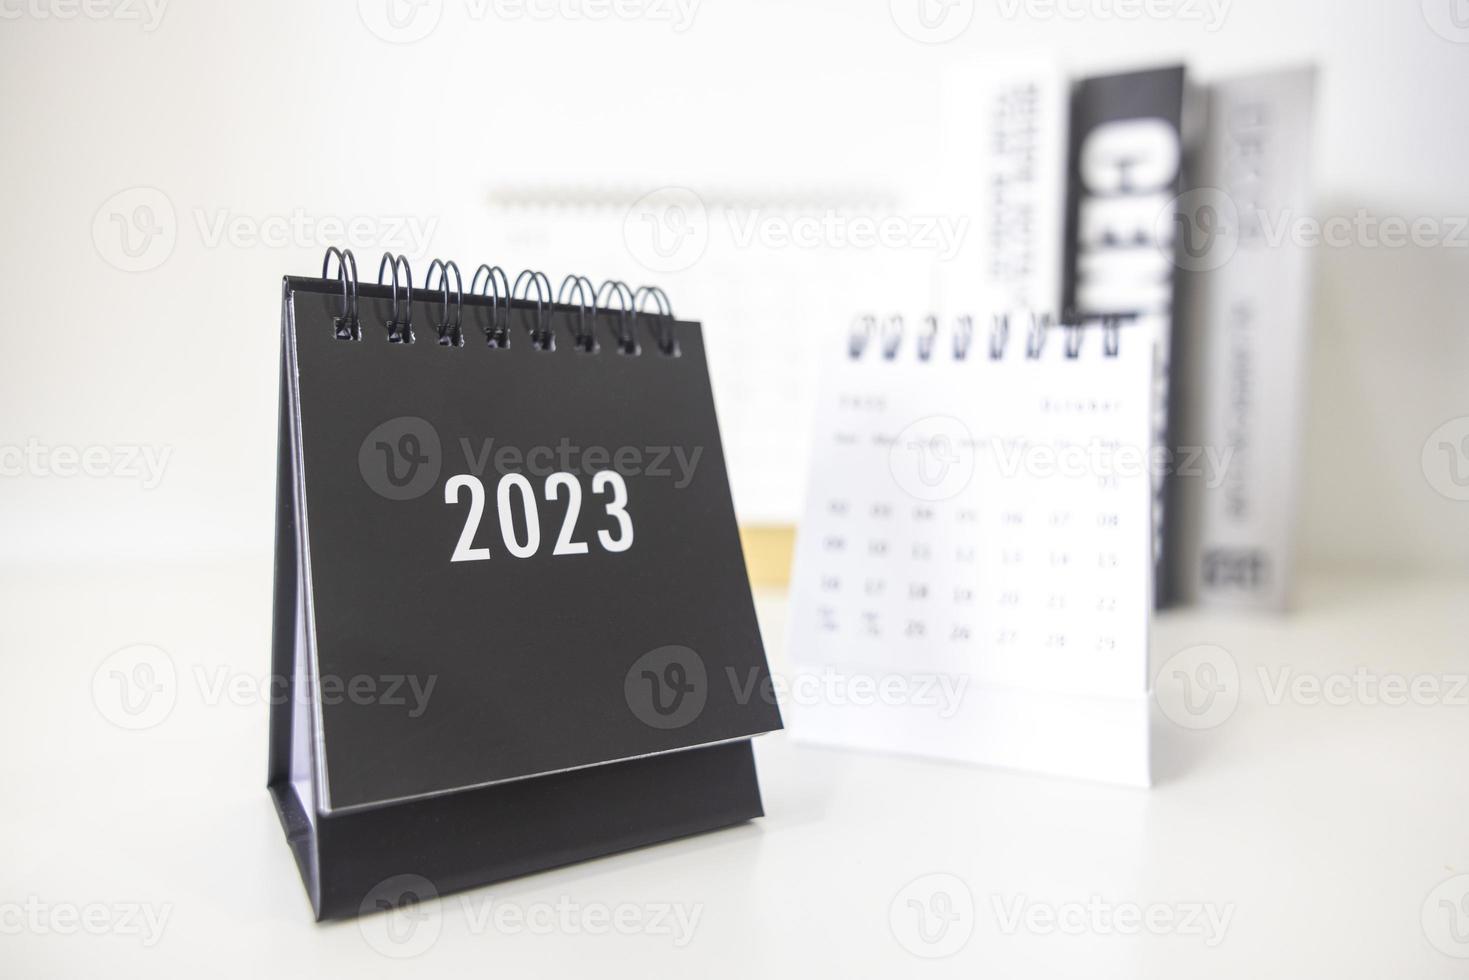 2023 Geschäftskalender auf dem Bürotisch am Neujahrstag. Erstellen Sie einen Arbeitsplan für den Jahresanfang. konzept über feier, geschäft, weihnachten, neujahr. foto